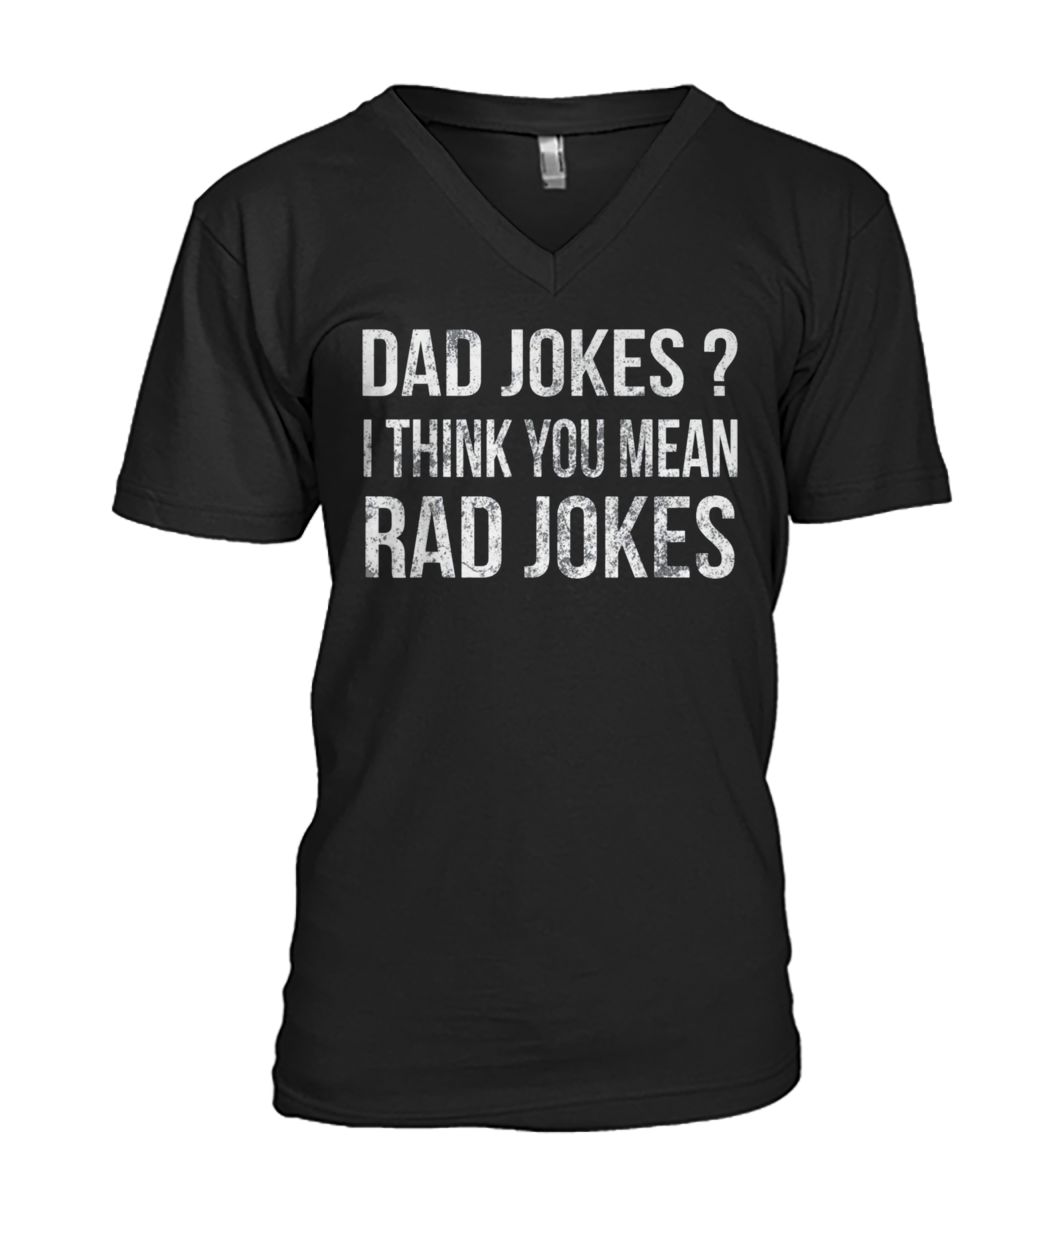 Dad jokes I think you mean rad jokes mens v-neck